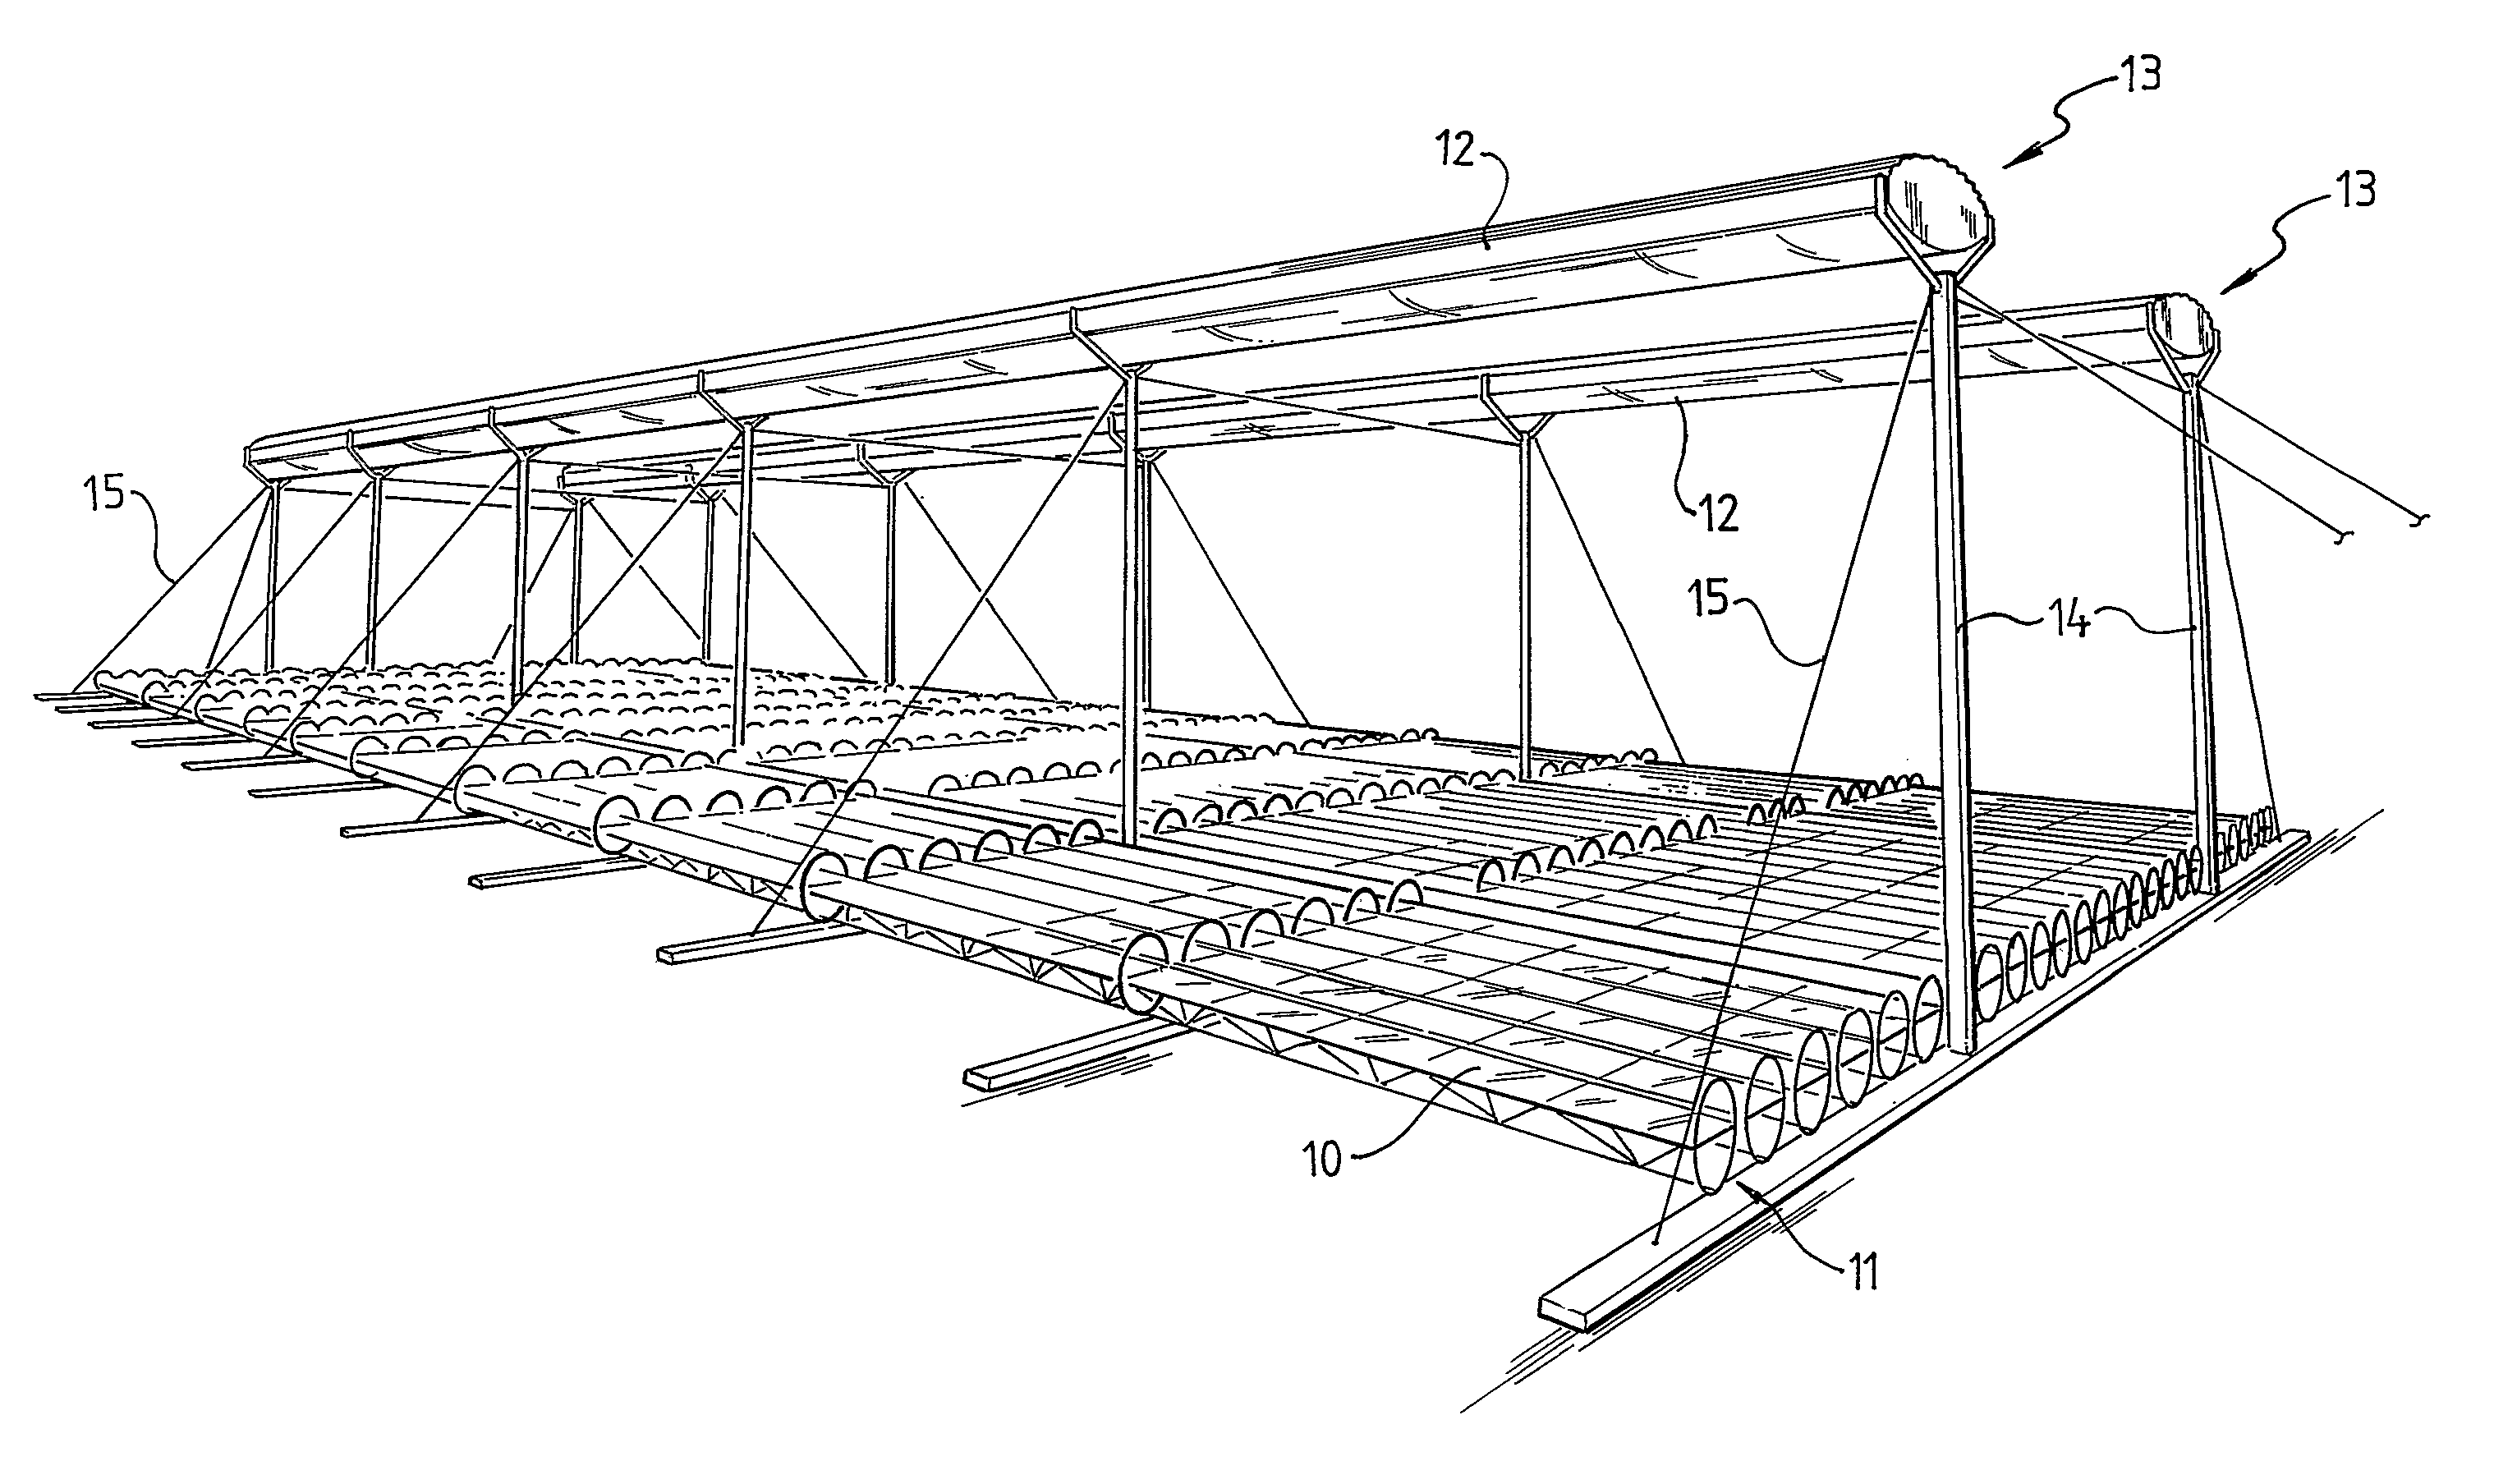 Multi-tube solar collector structure